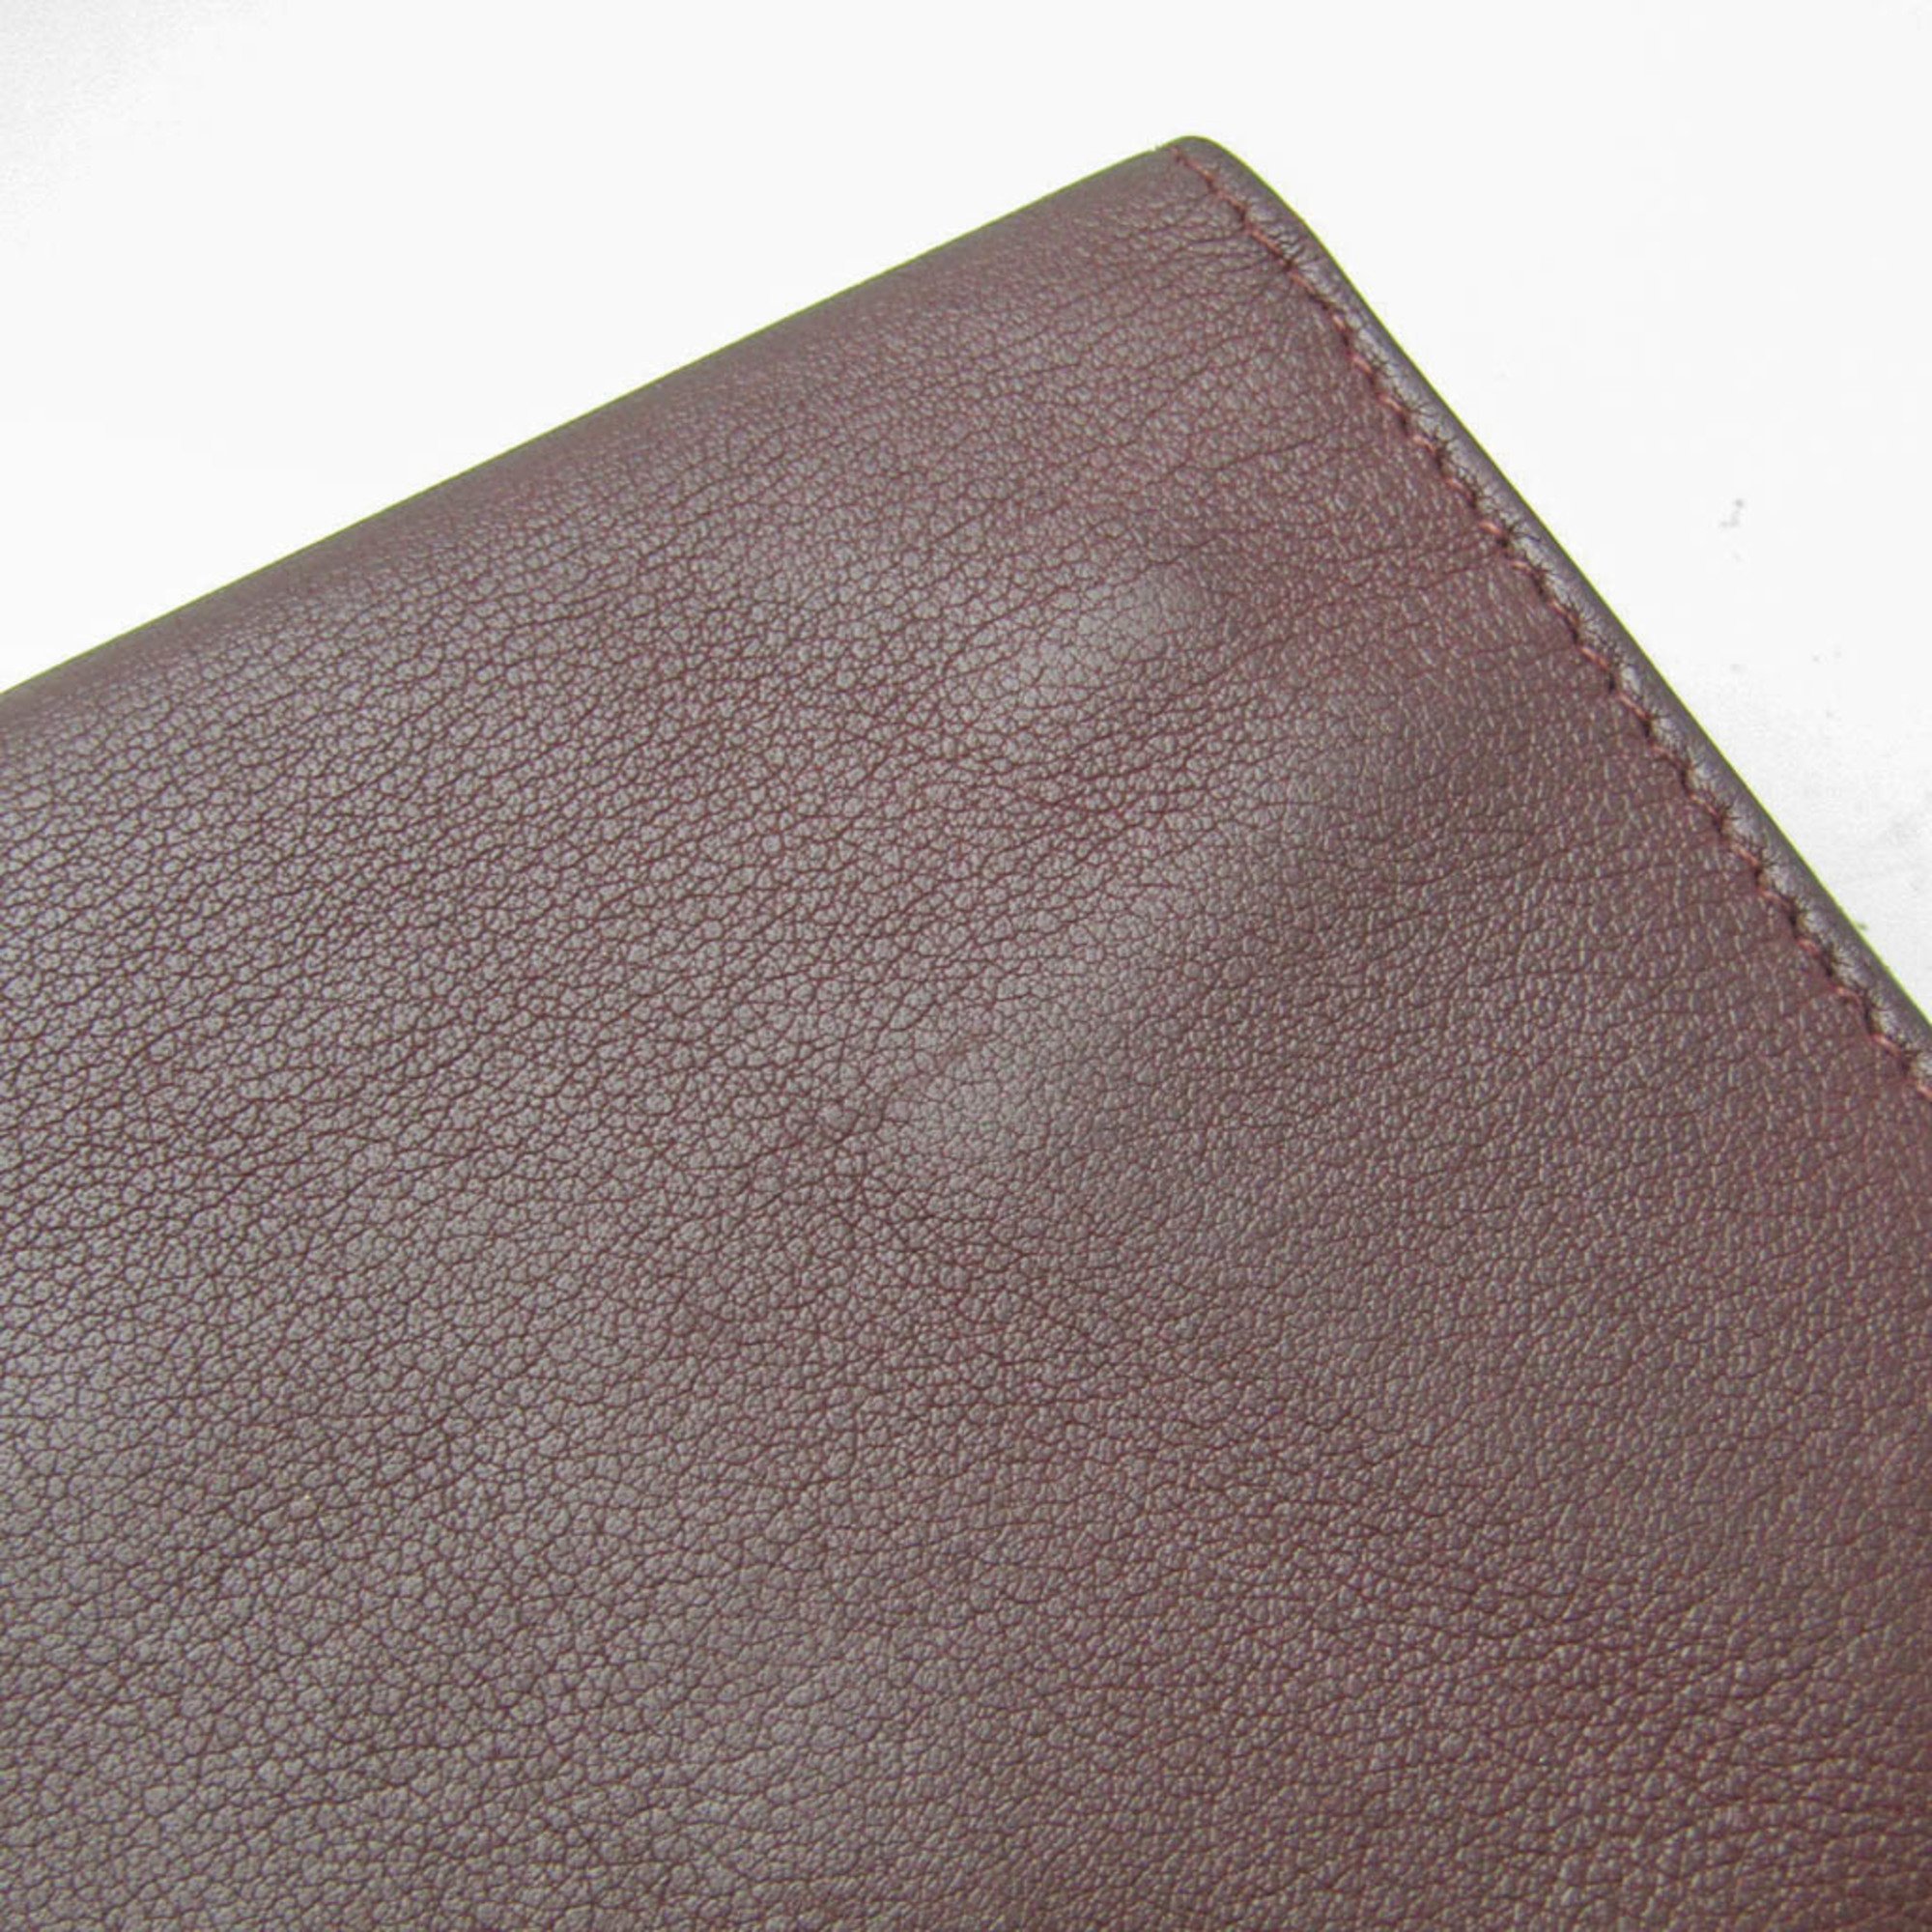 Hermes Citizen Twill Long Silk In Men's Leather Bill Wallet (bi-fold) Bordeaux